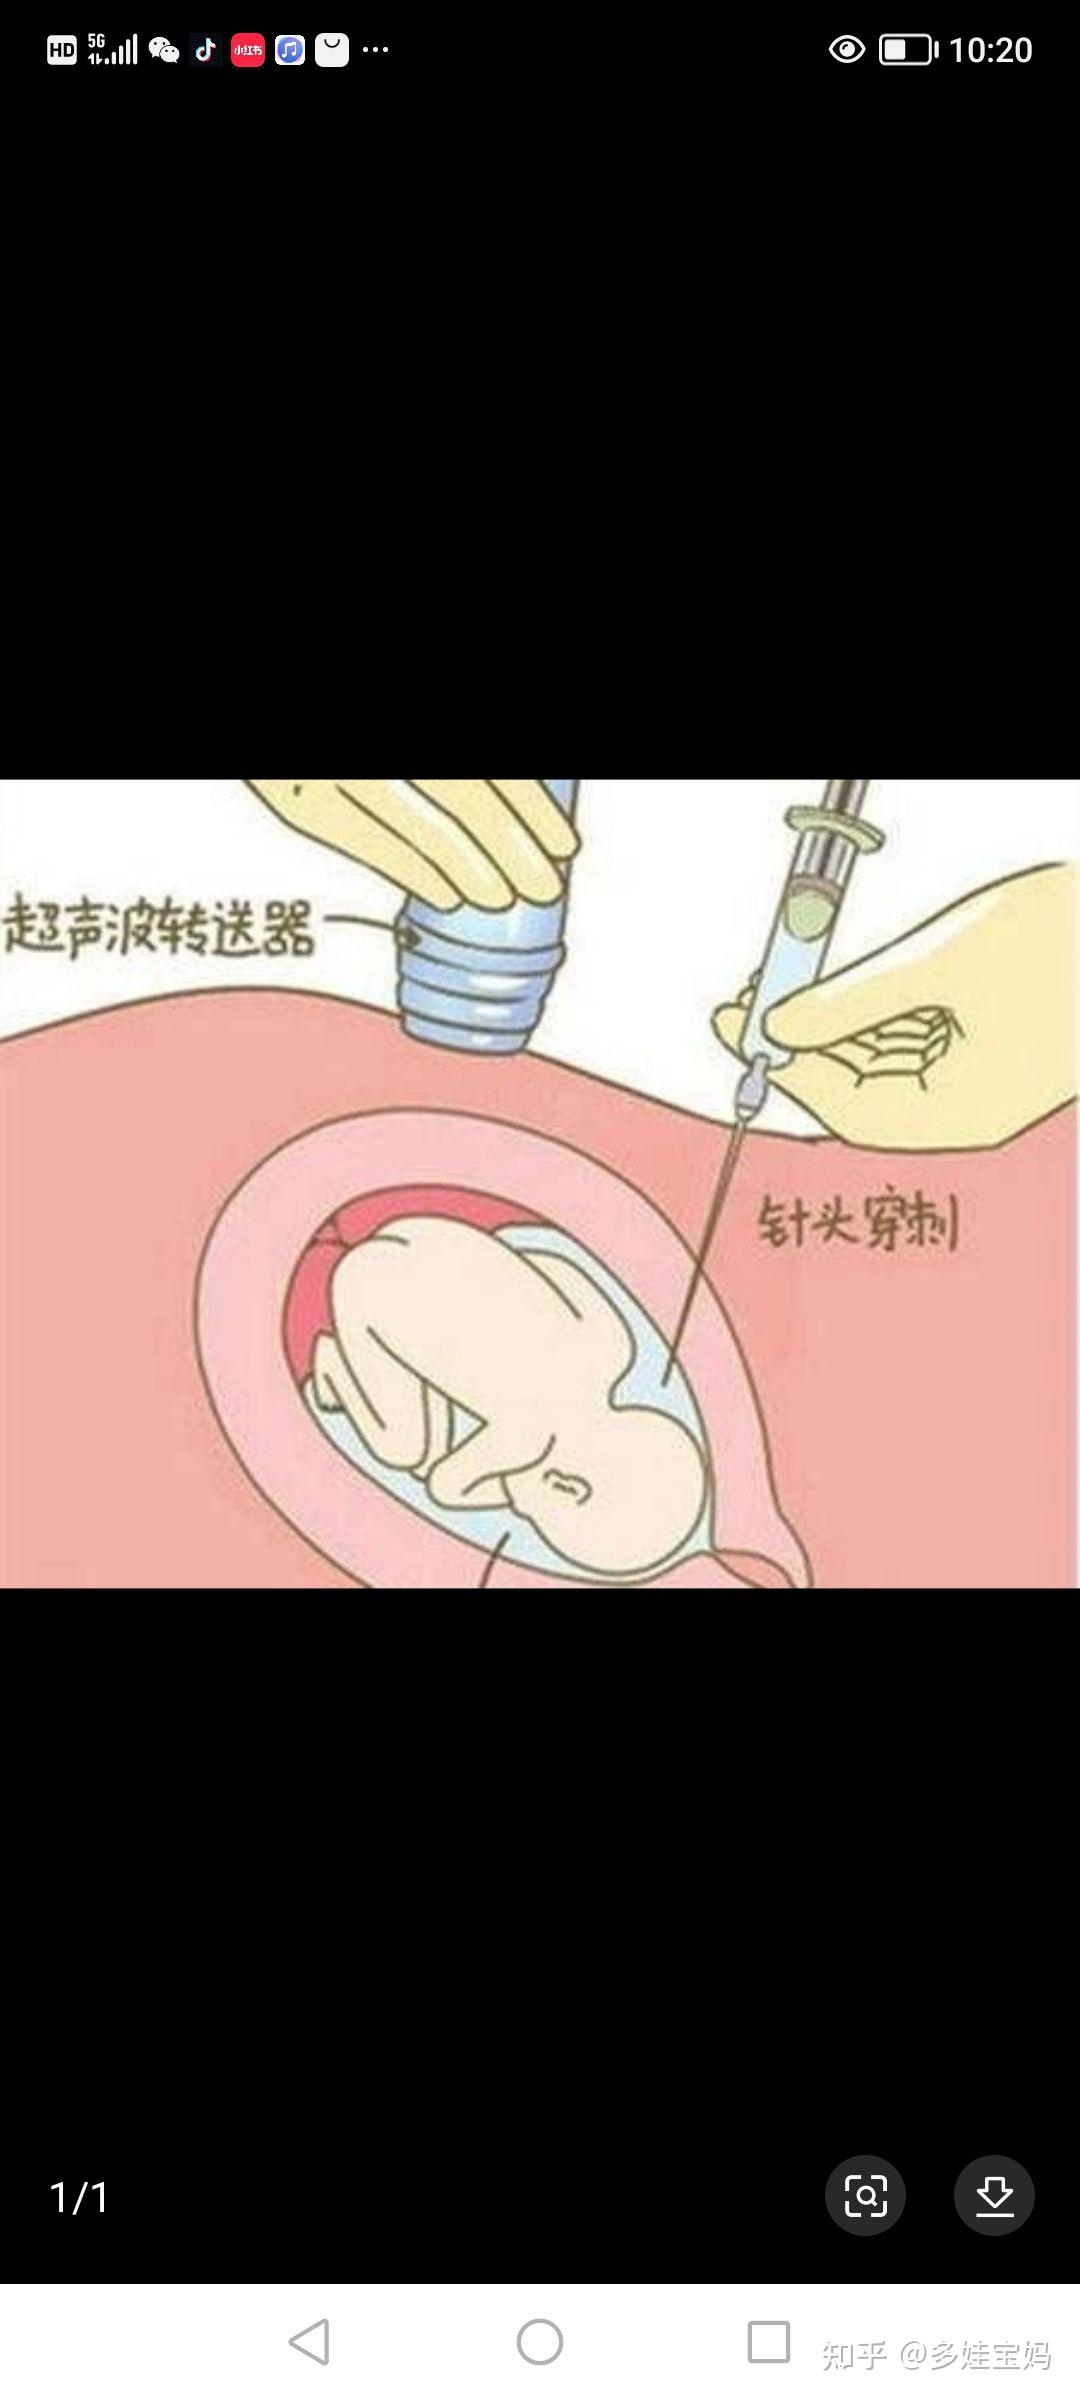 上海长宁妇幼保健院羊水穿刺攻略：手术流程、费用参考、注意事项、结果报告等 - 知乎